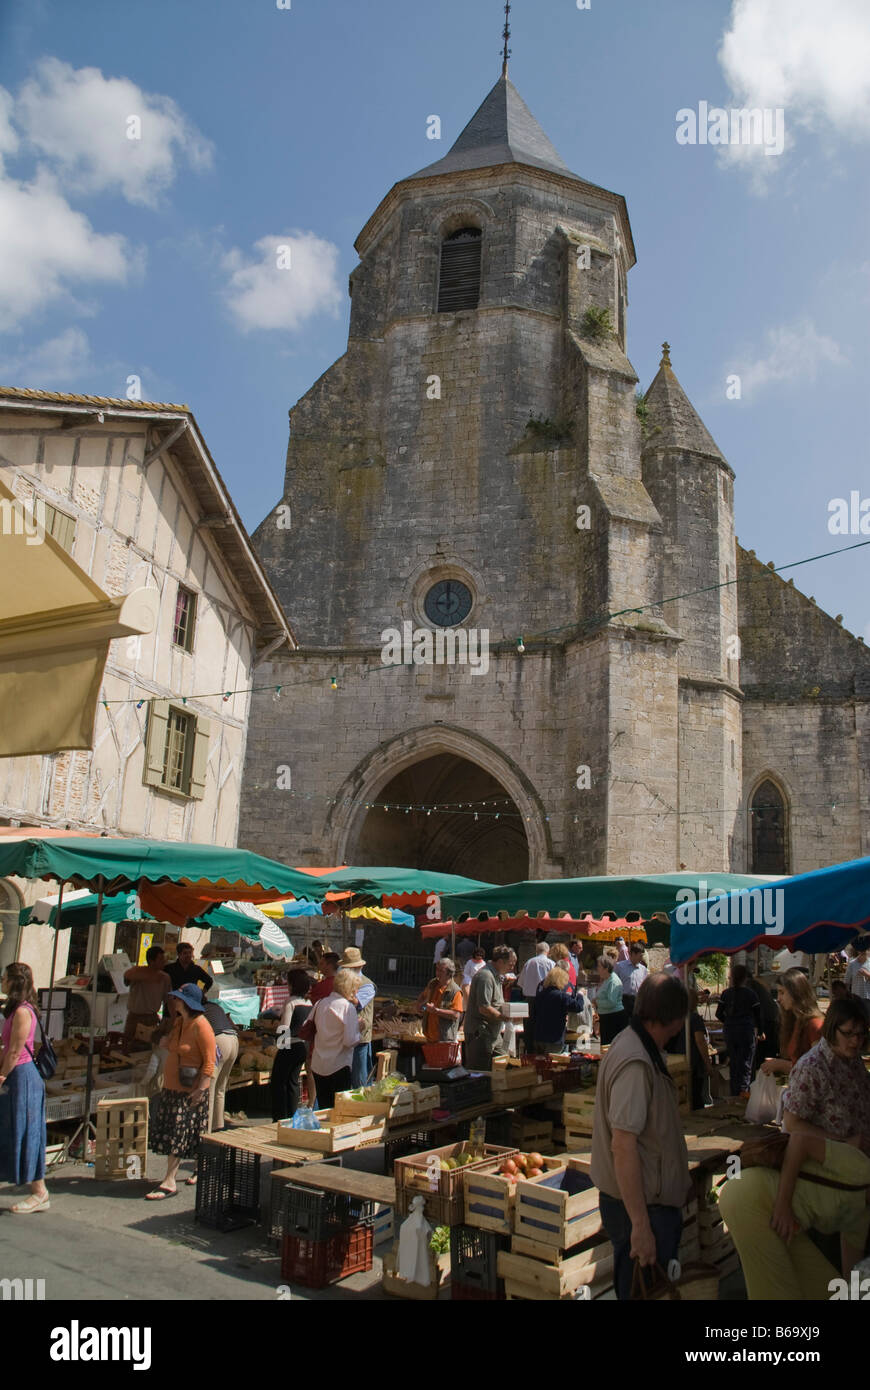 La chiesa e il francese le bancarelle del mercato, Francia Foto Stock